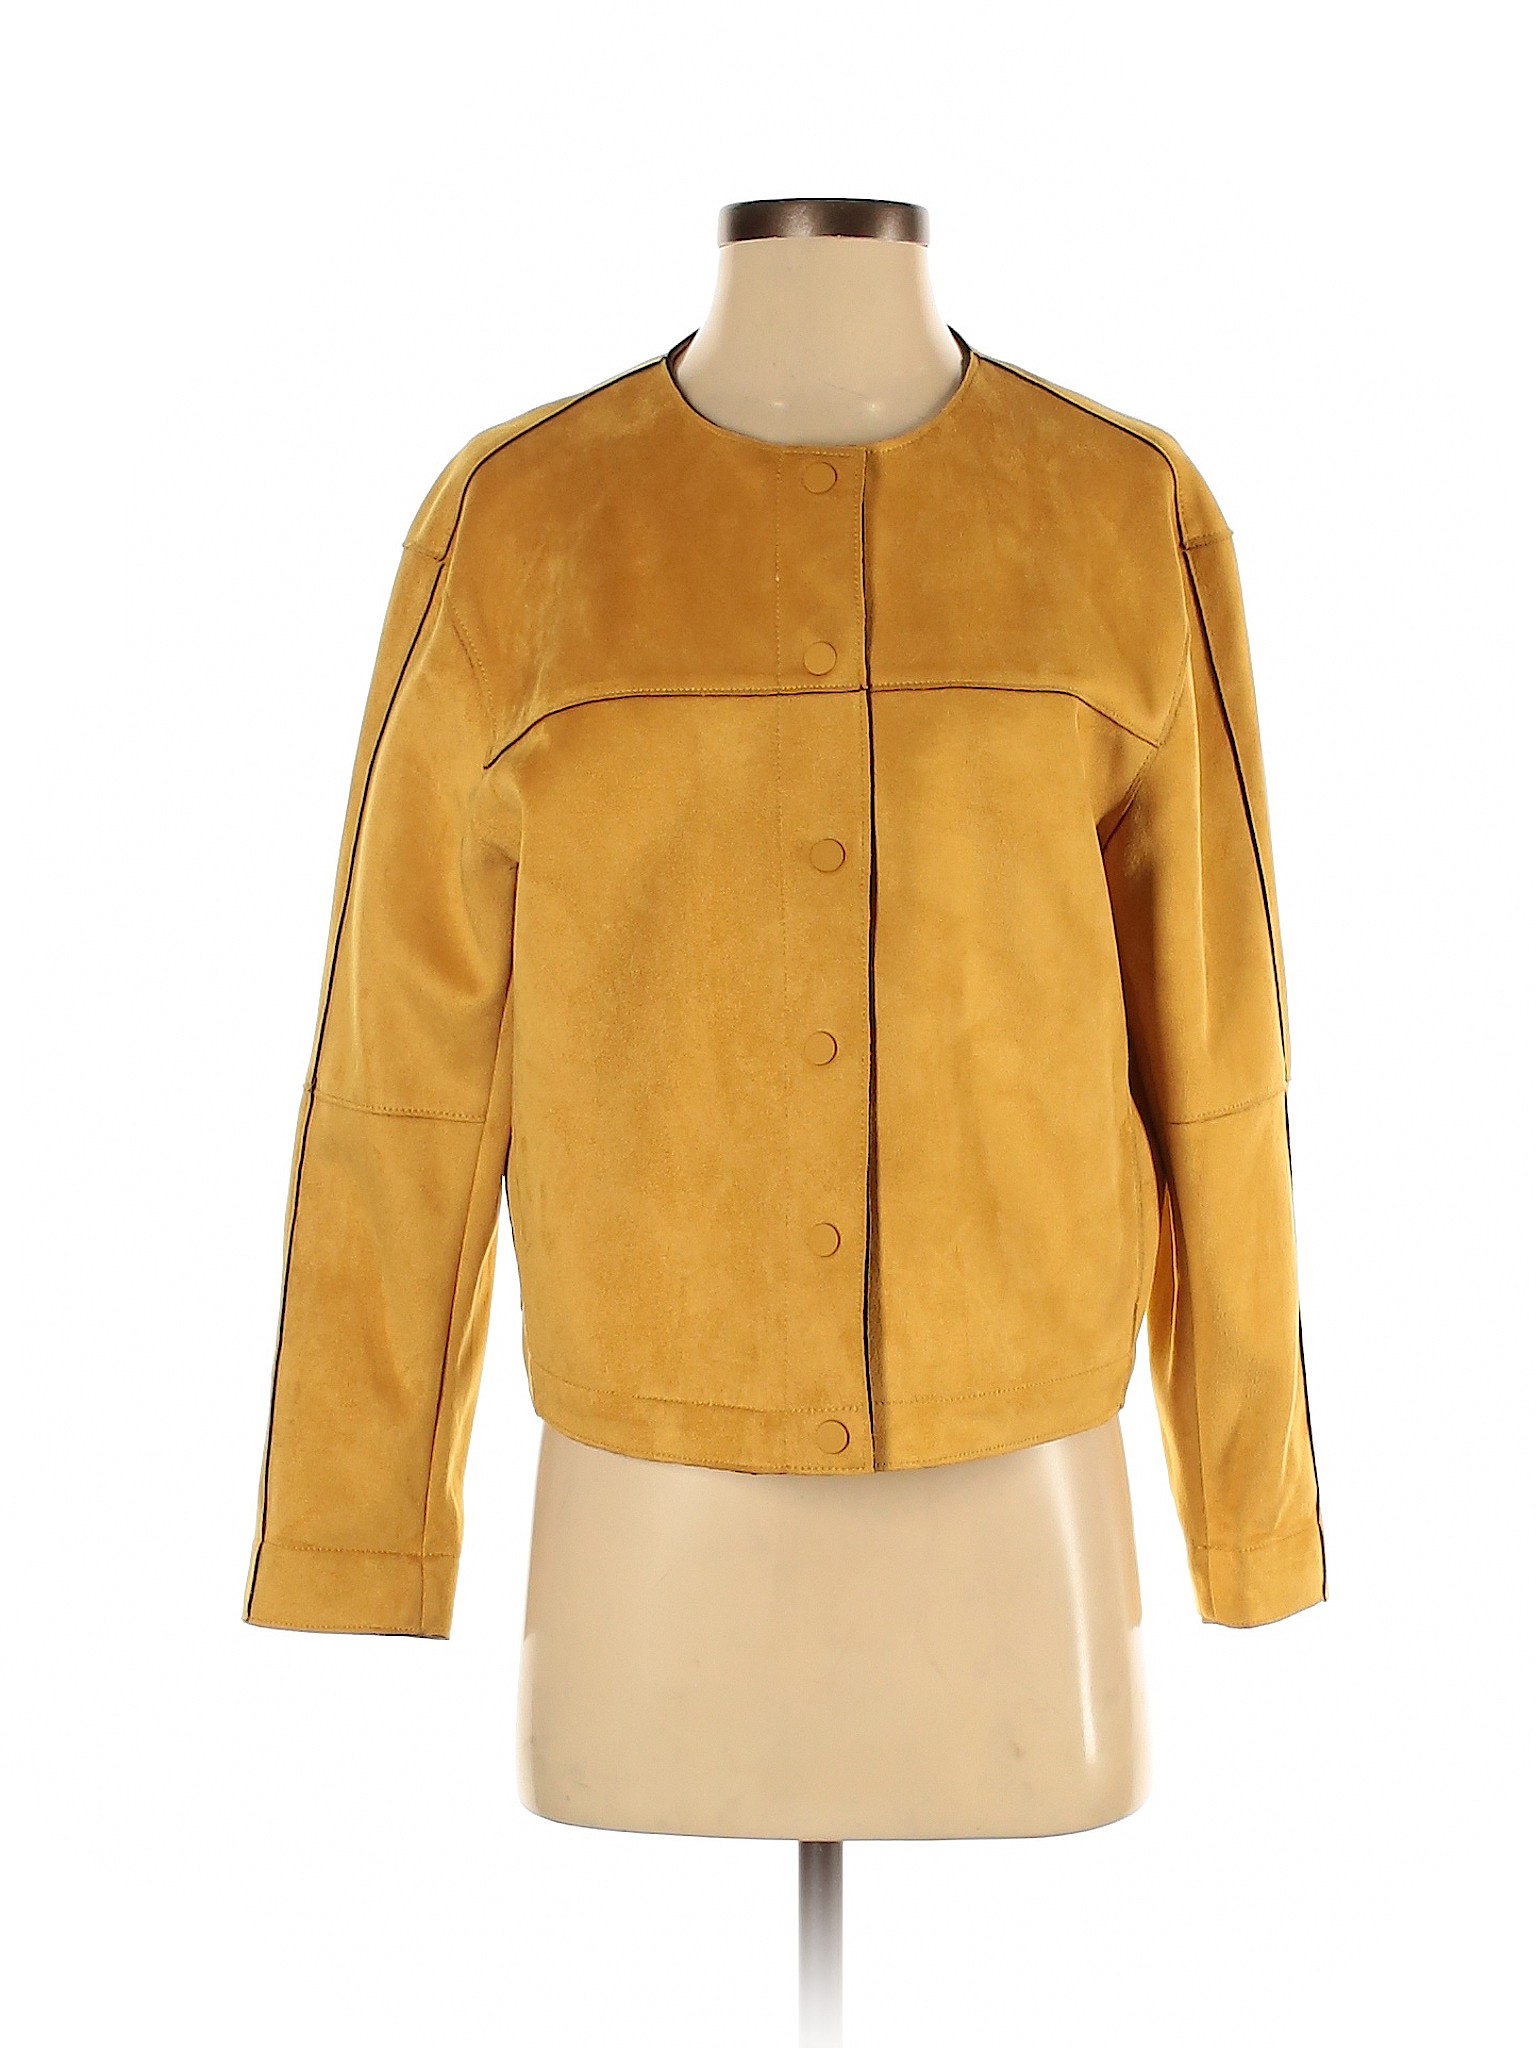 zara yellow jacket women's